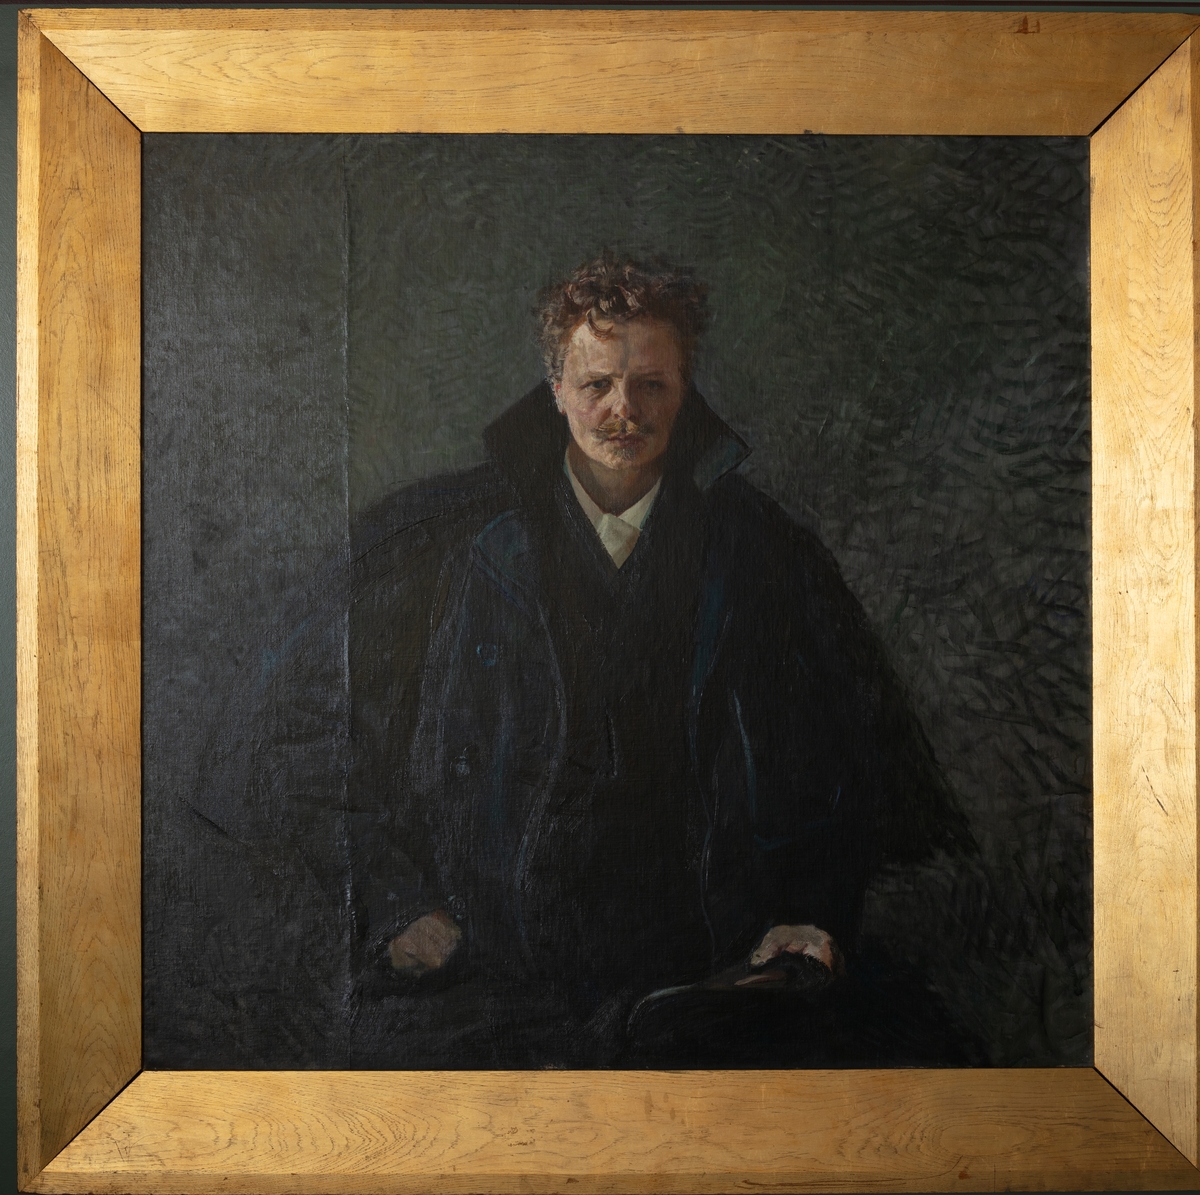 Portrett av August Strindberg, svensk forfatter.